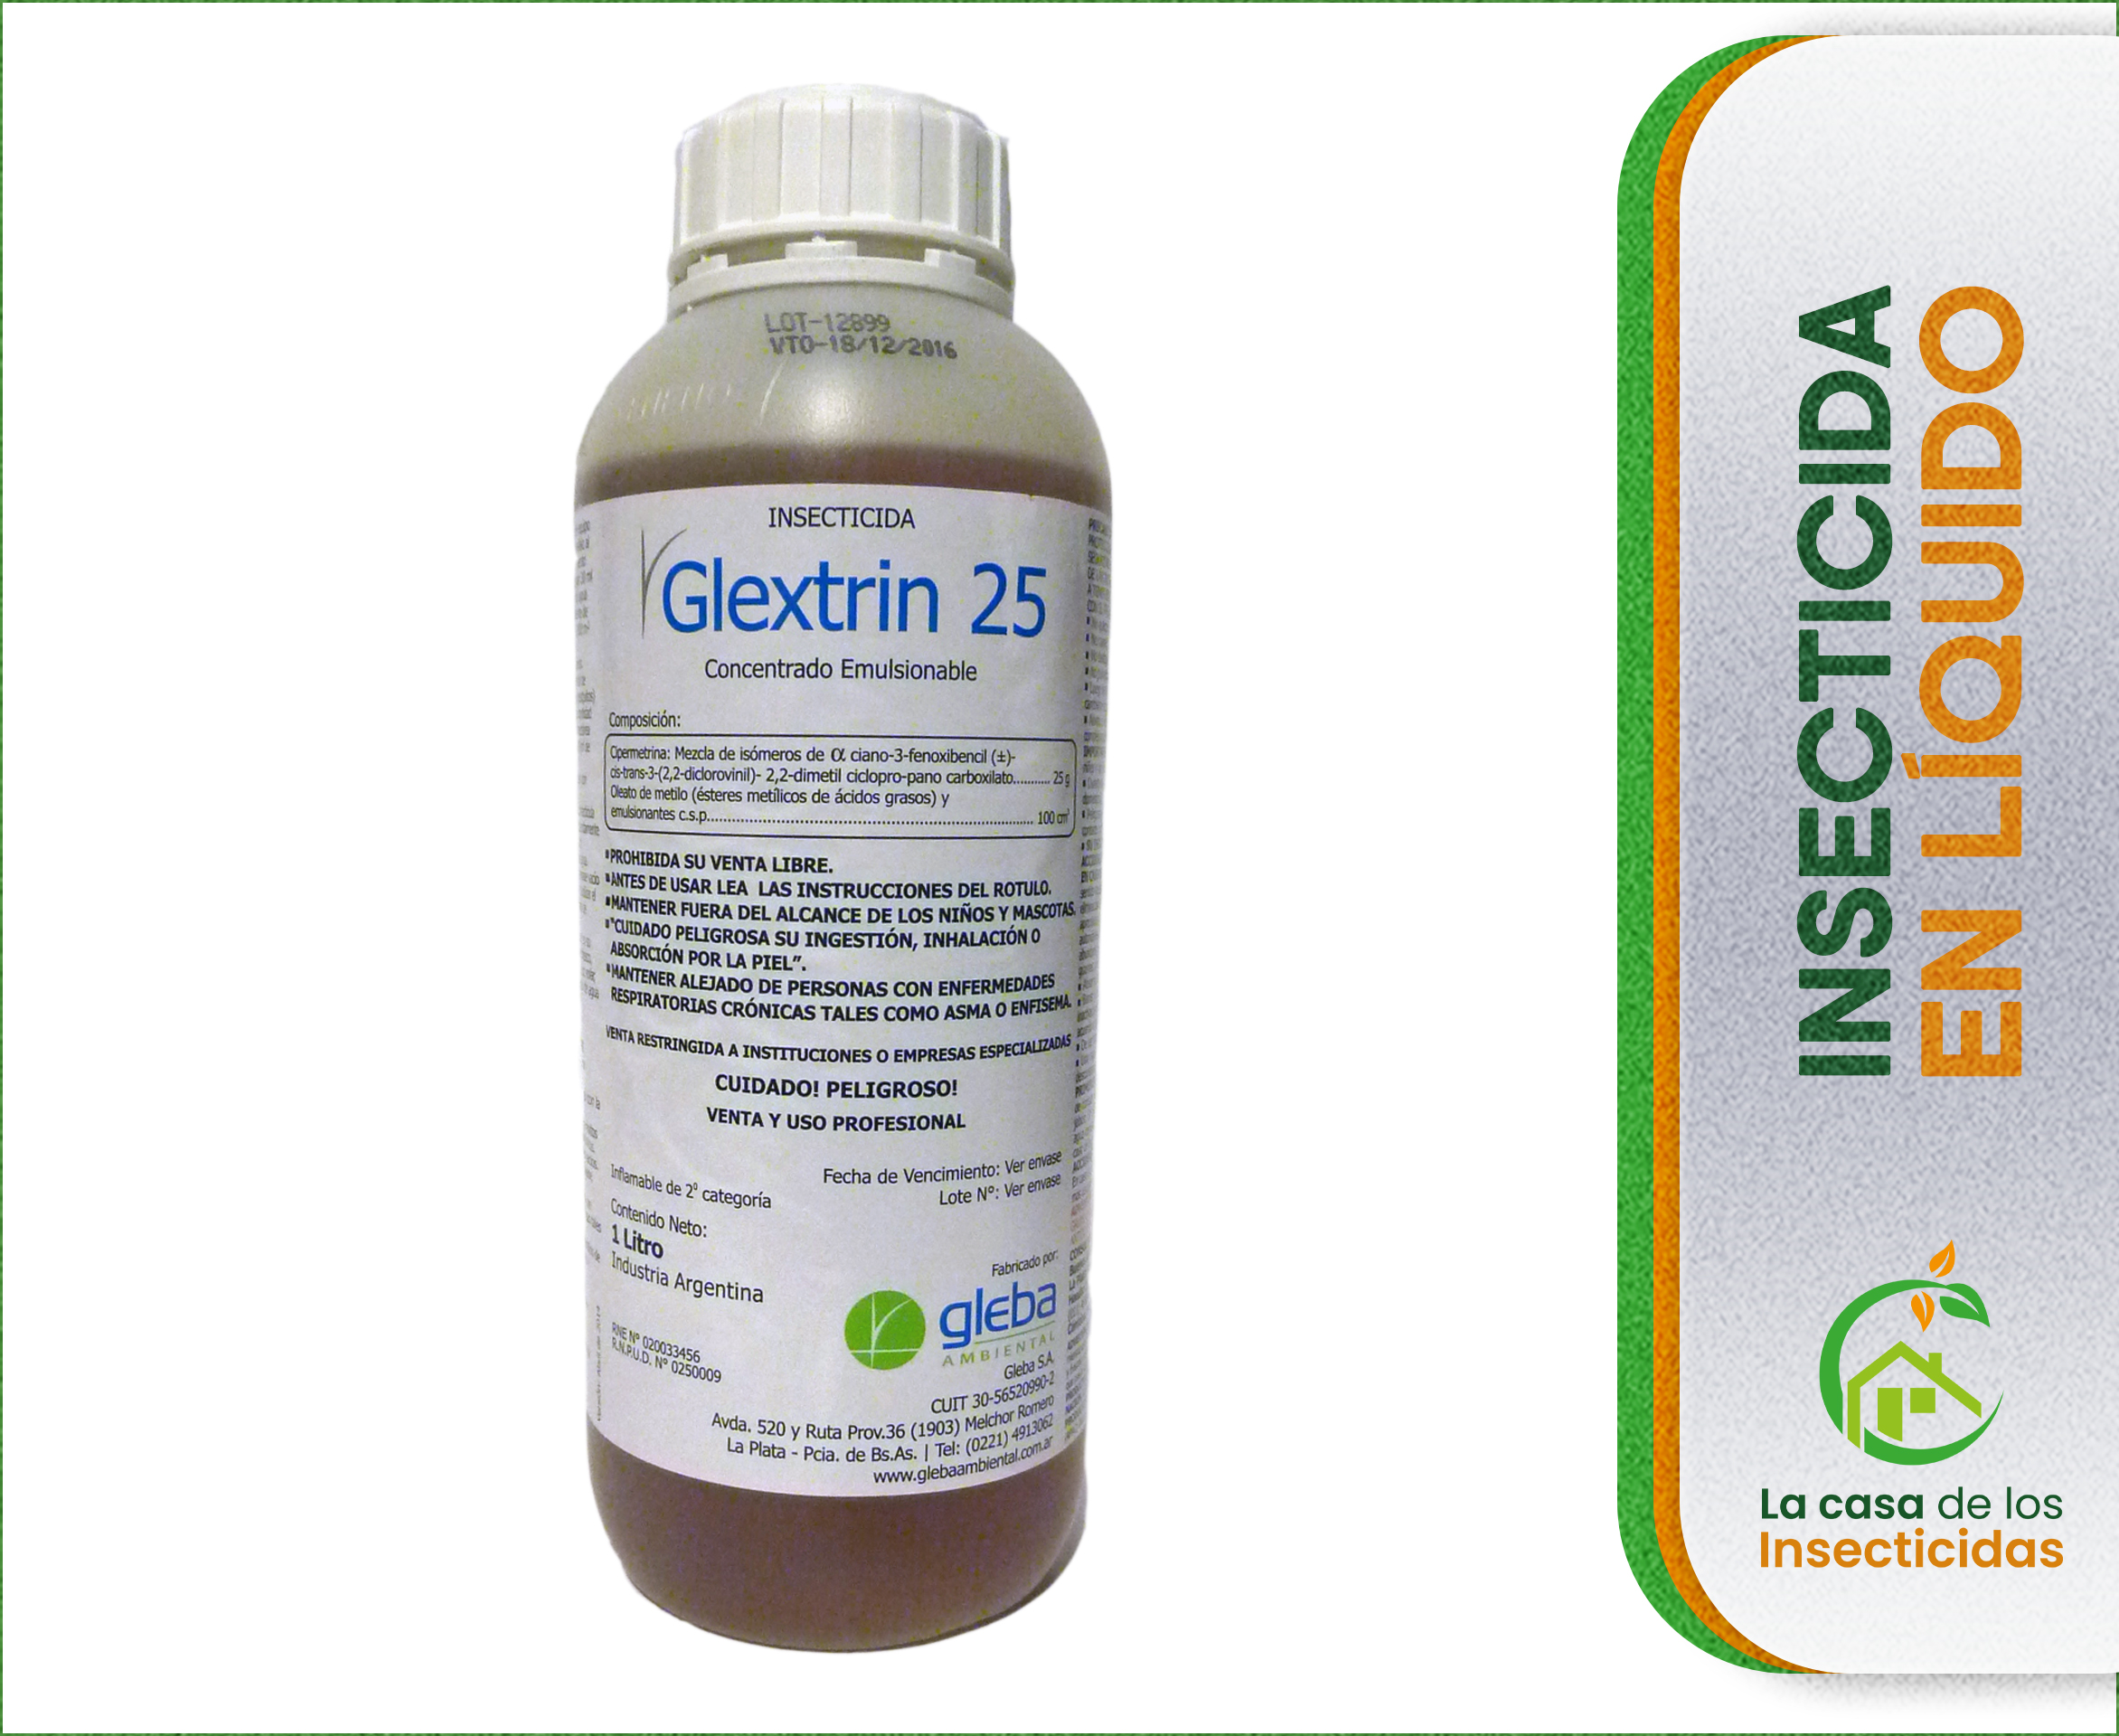 Glextrin 25 insecticida fumigación control de plagas x 1lt.